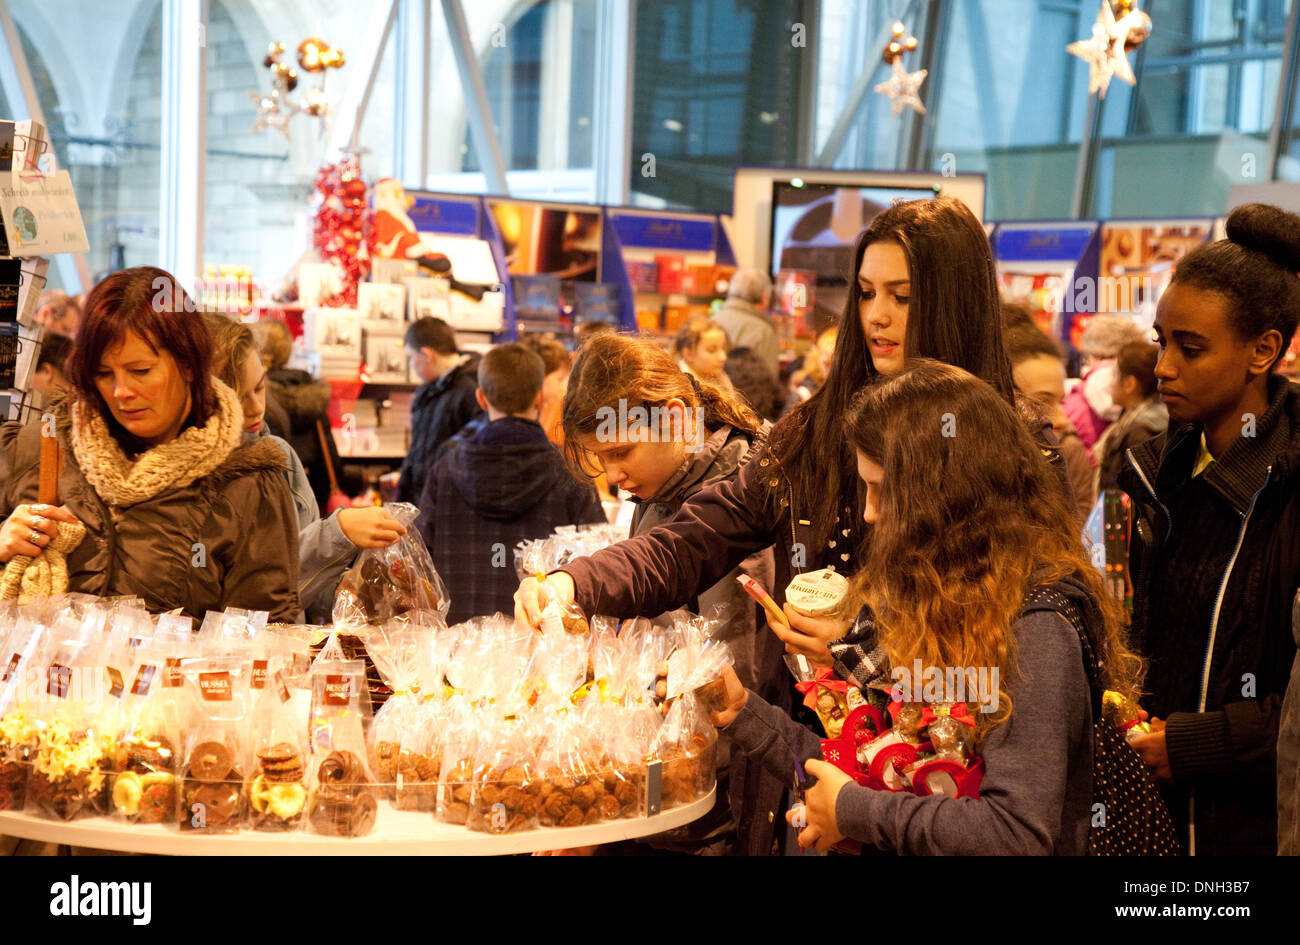 Kinder kaufen, Schokolade und Süßigkeiten, das Kölner Schokoladenmuseum Geschenkeladen, Köln (Köln), Deutschland, Europa Stockfoto